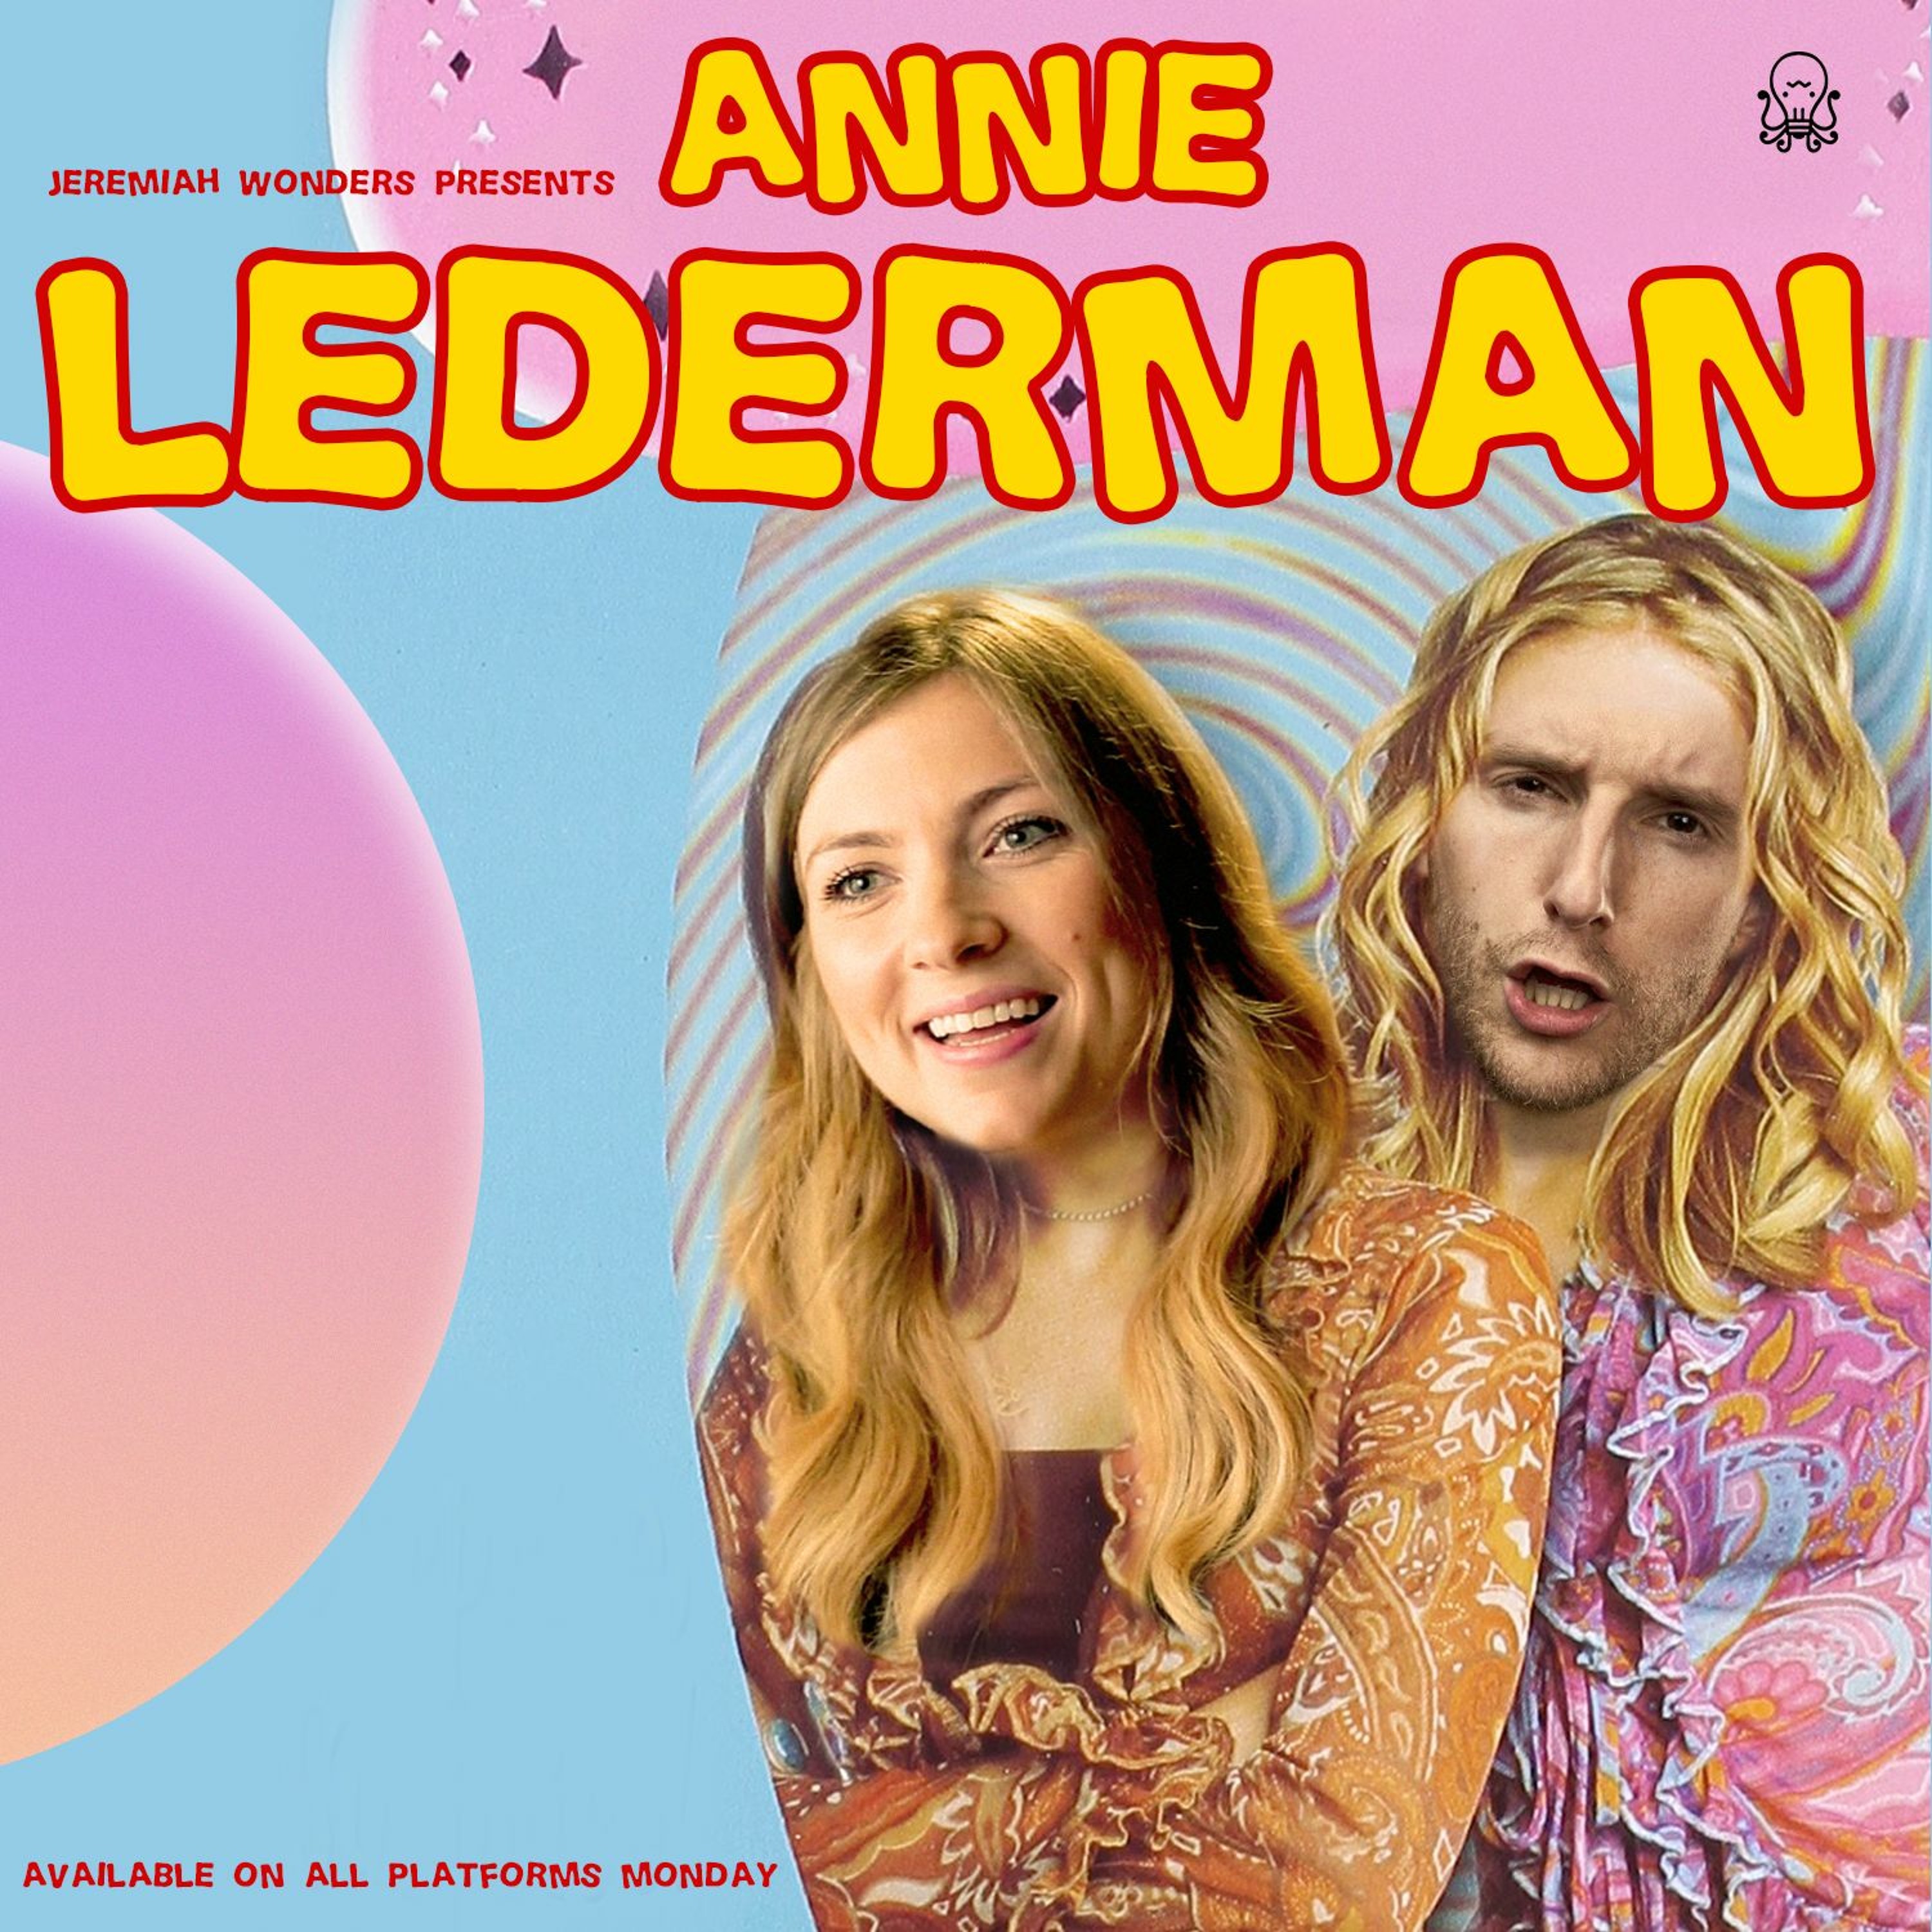 Annie lederman sexy